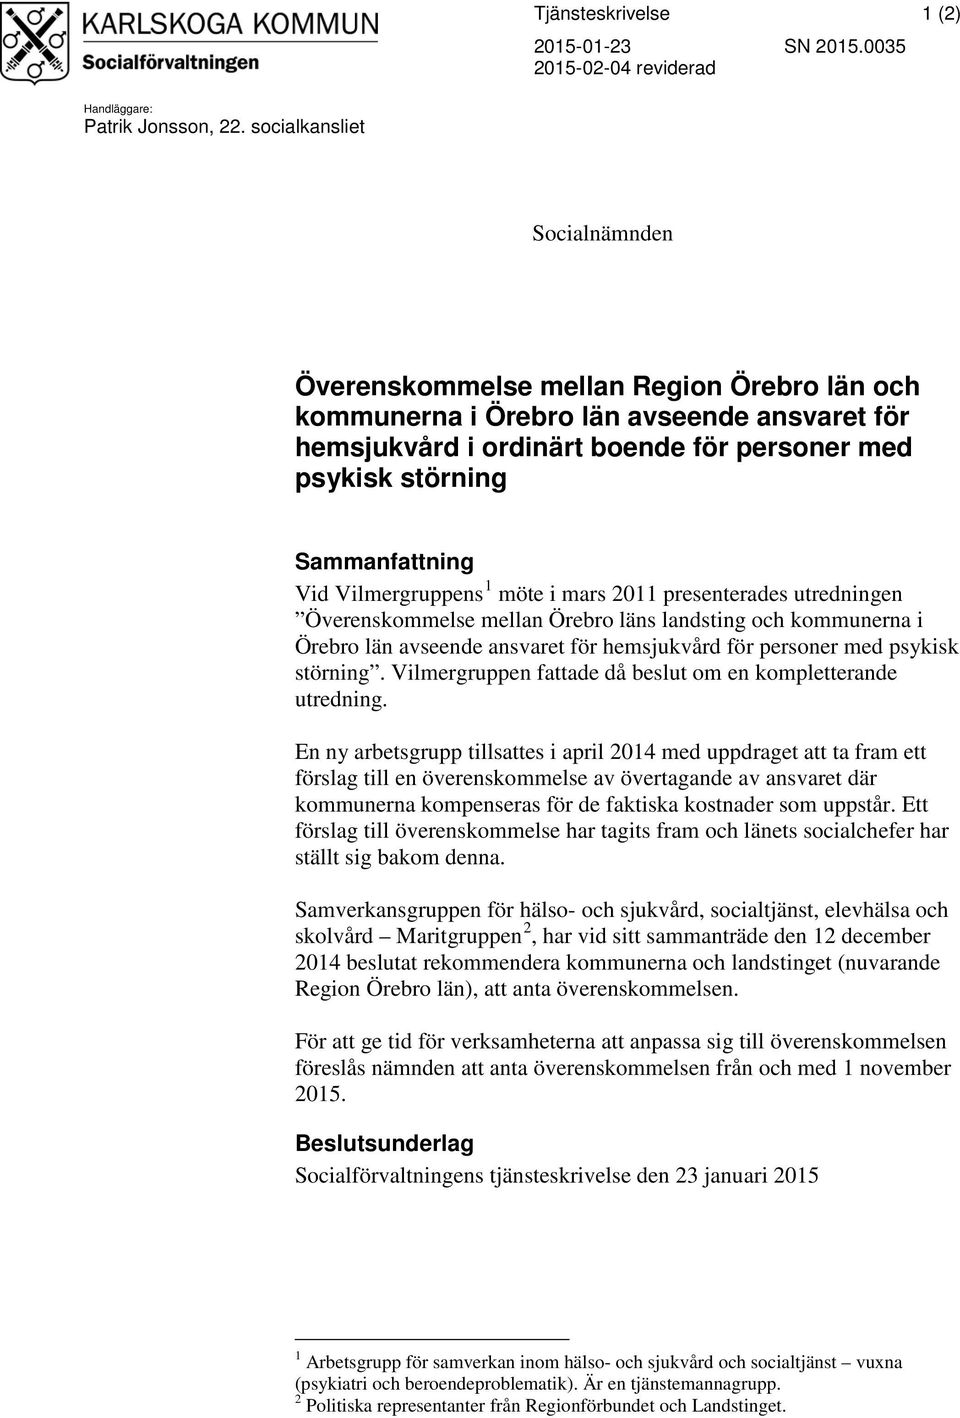 Vid Vilmergruppens 1 möte i mars 2011 presenterades utredningen Överenskommelse mellan Örebro läns landsting och kommunerna i Örebro län avseende ansvaret för hemsjukvård för personer med psykisk